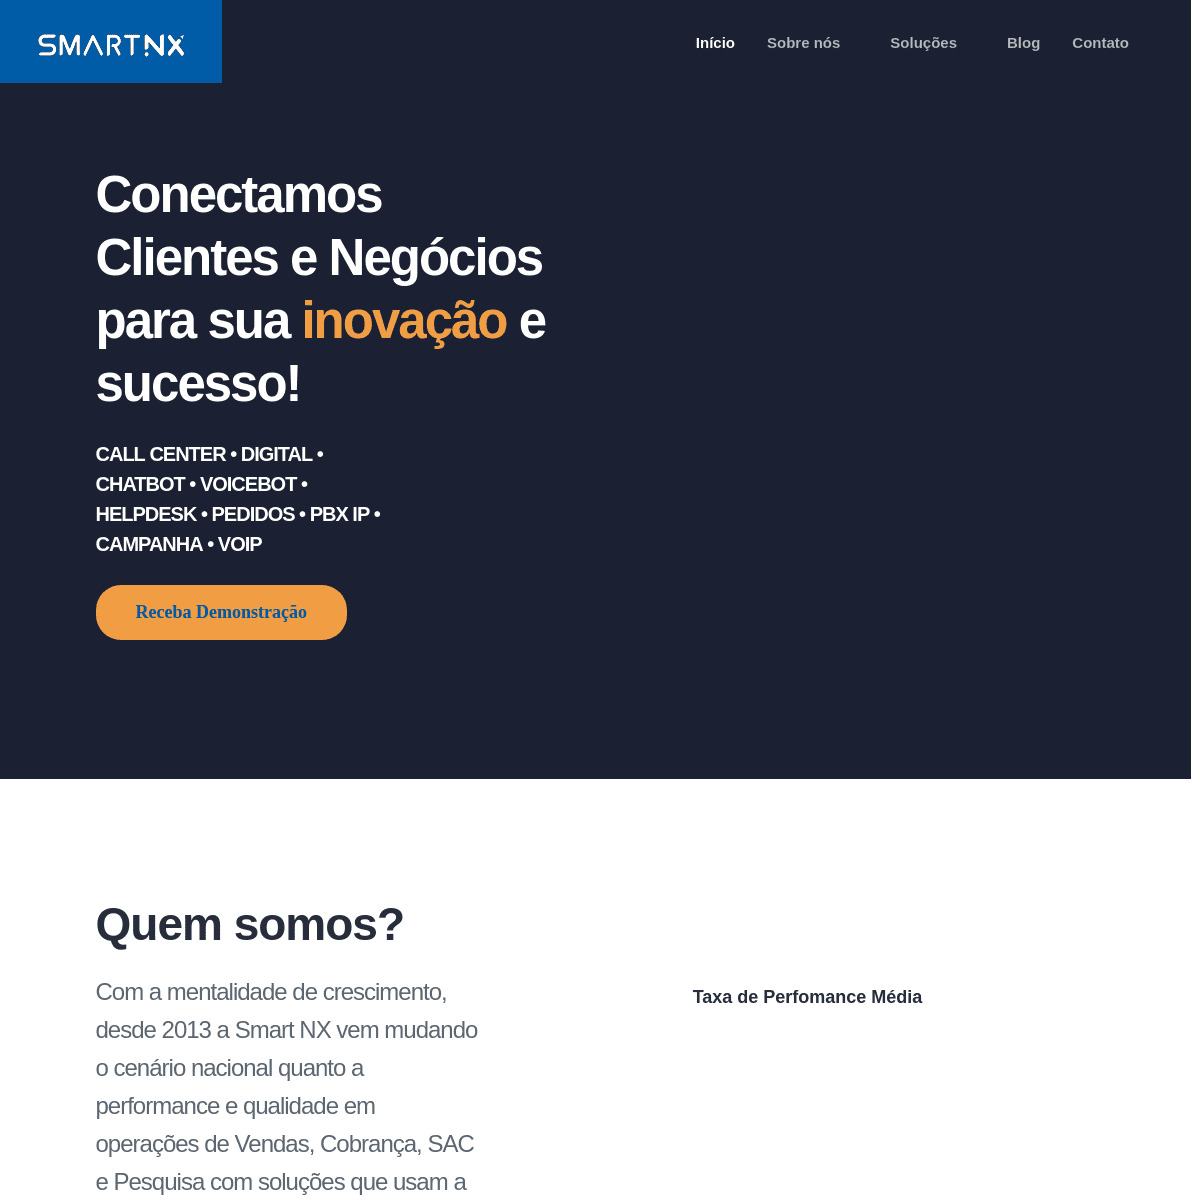 A complete backup of smartnx.com.br